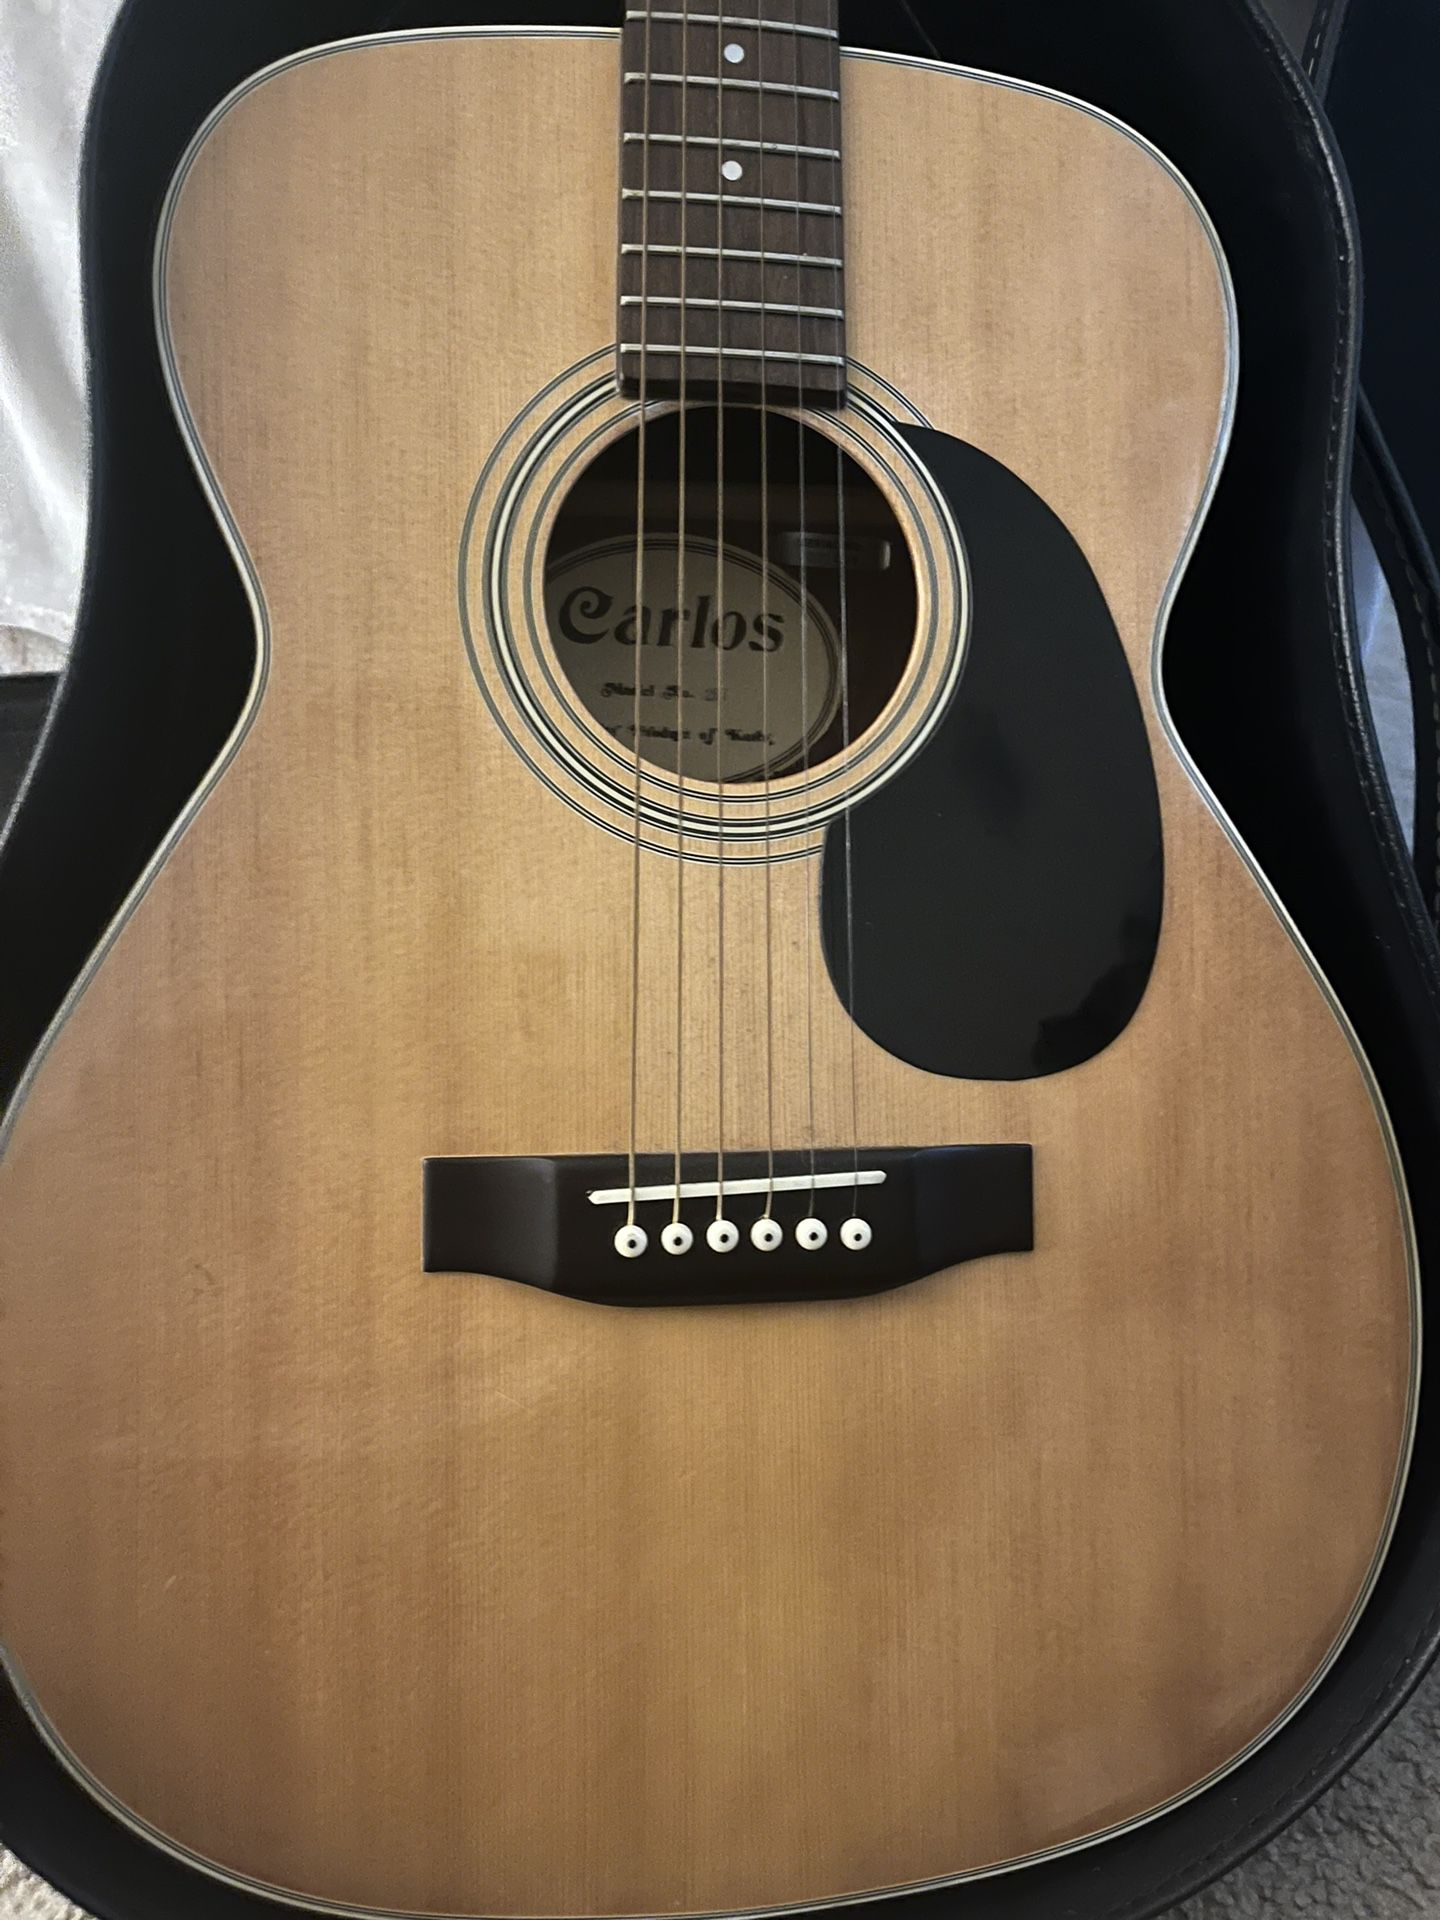 Acoustic Carlos Guitar Model 207